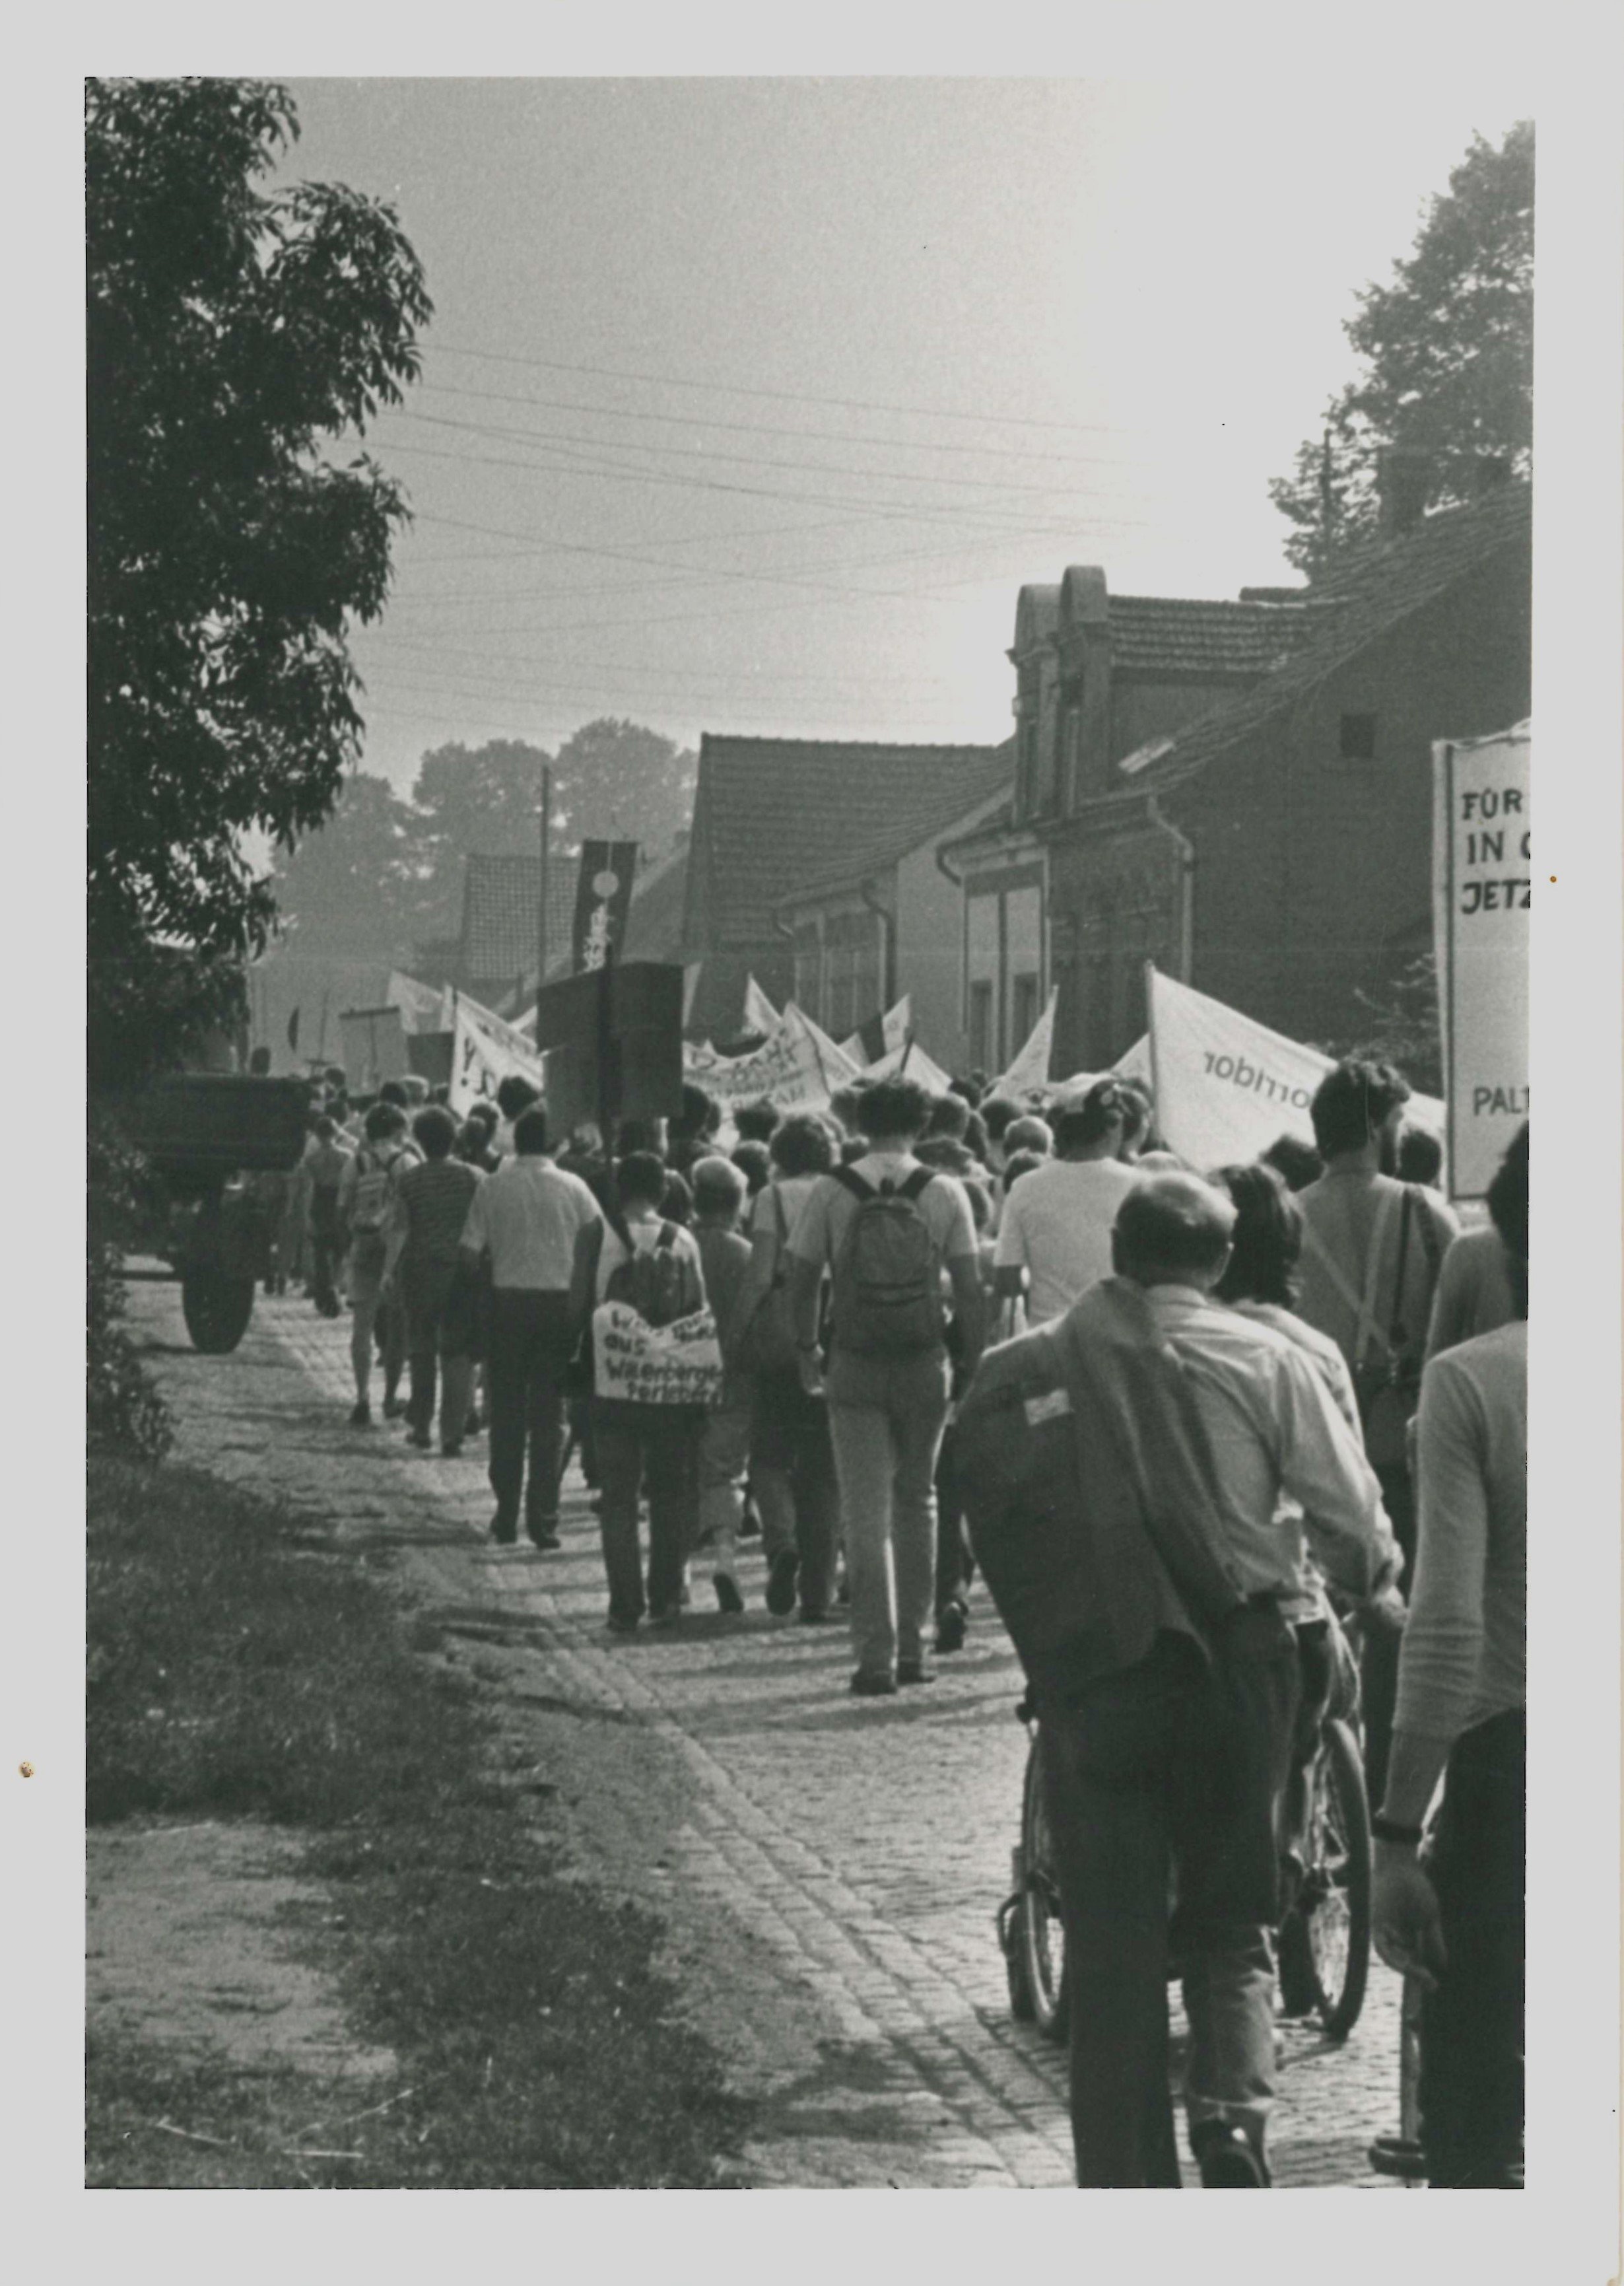 Olof-Palme-Marsch 1987: Demonstrationszug auf einer Dorfstraße (DDR Geschichtsmuseum im Dokumentationszentrum Perleberg CC BY-SA)